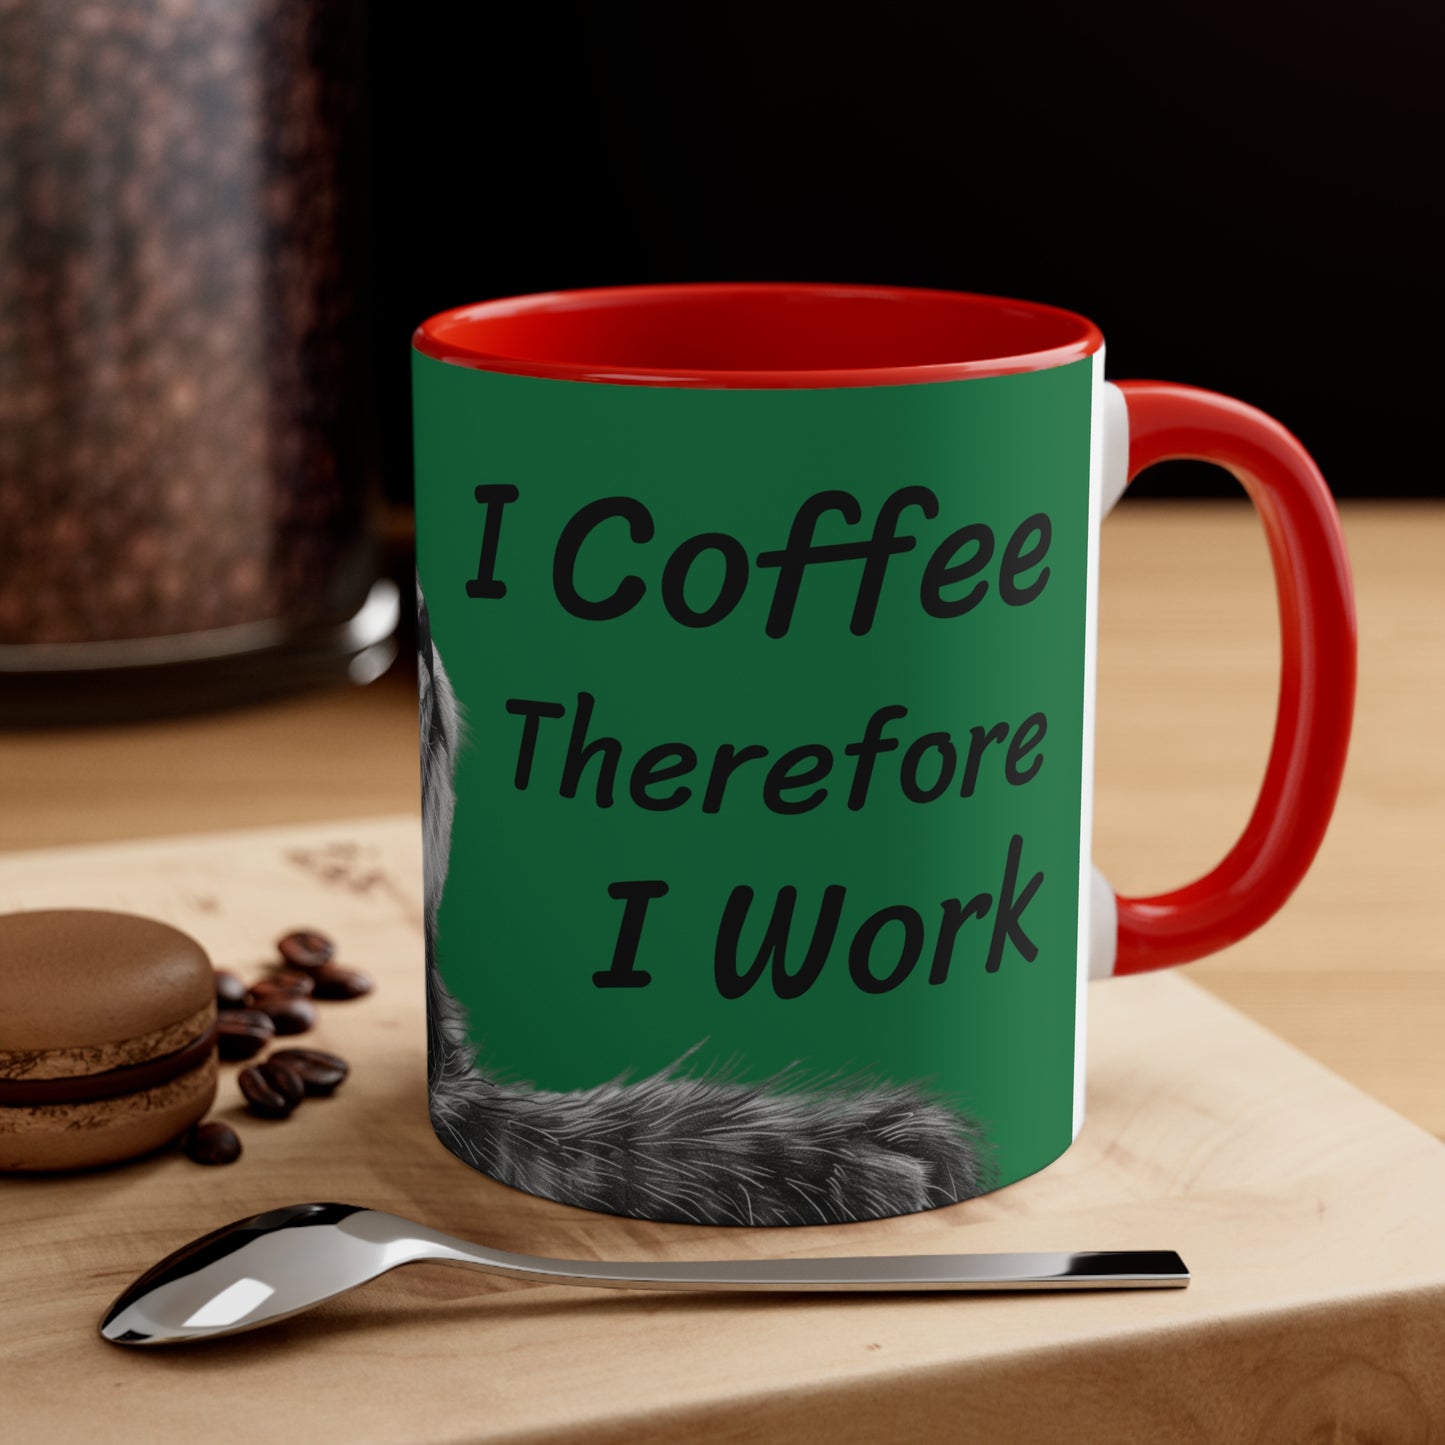 I Coffee Therefore I Work